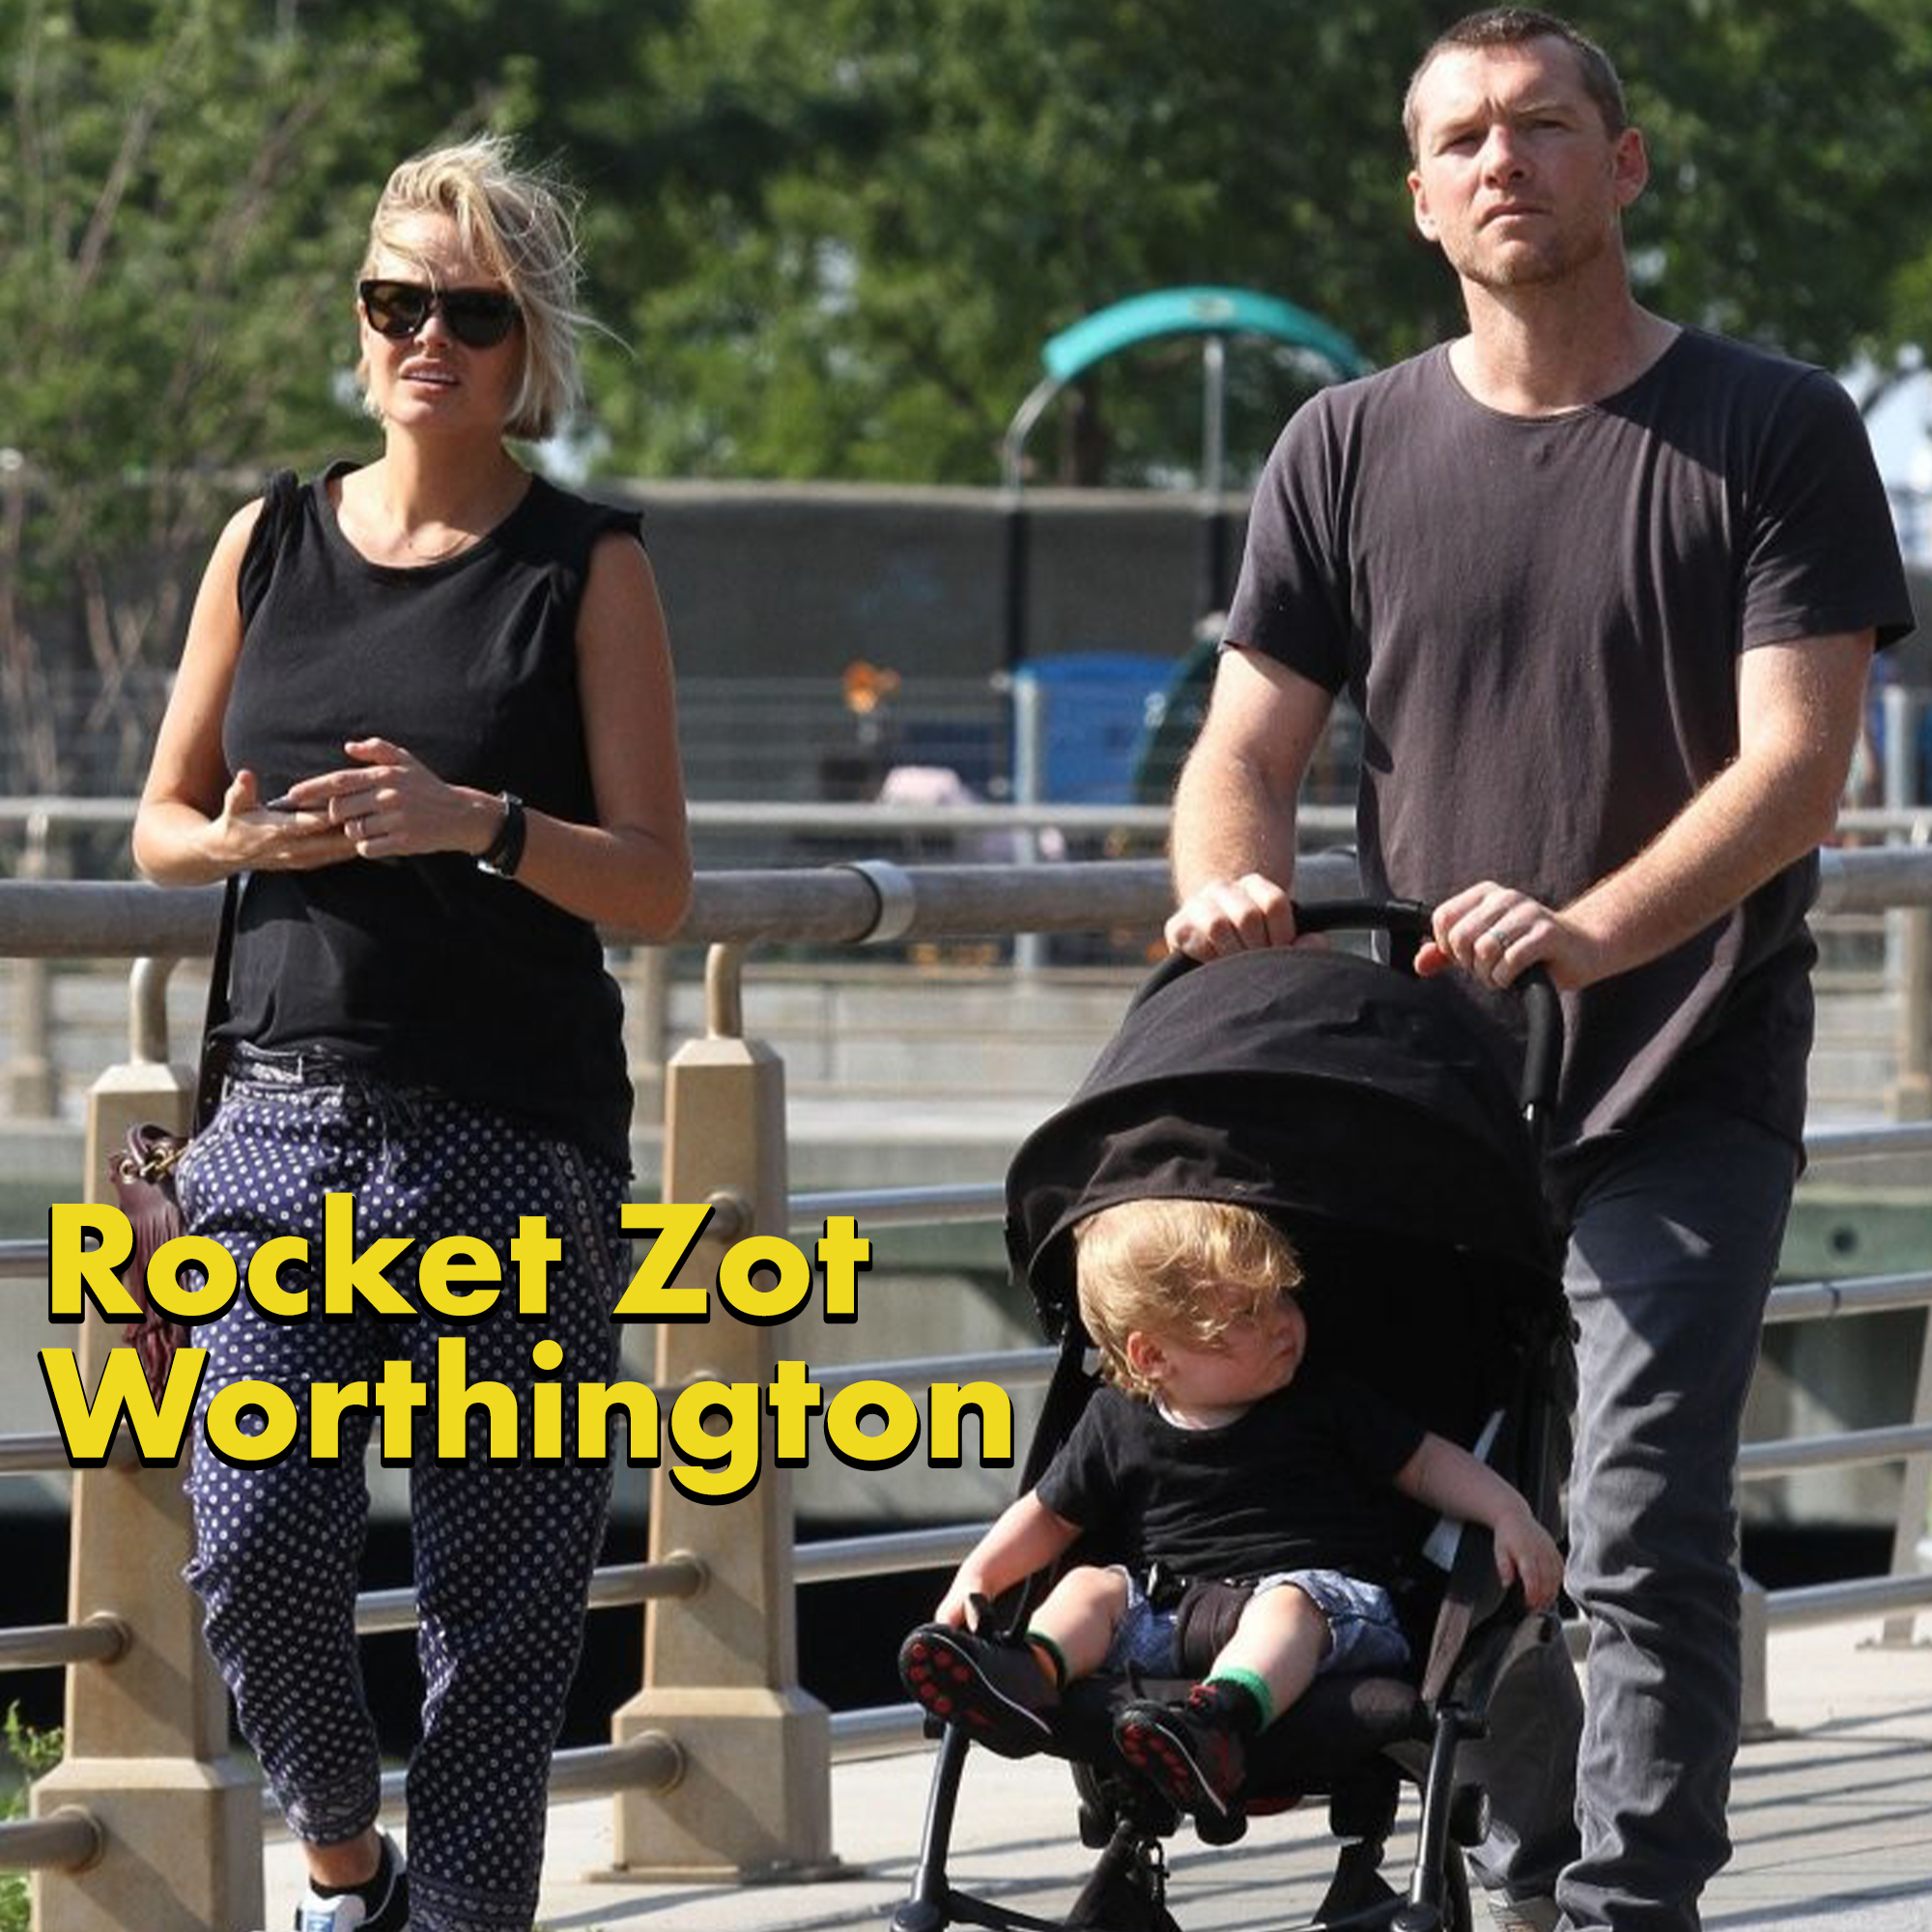 Terrible celeb baby names -rocket worthington - Rocket Zot Worthington